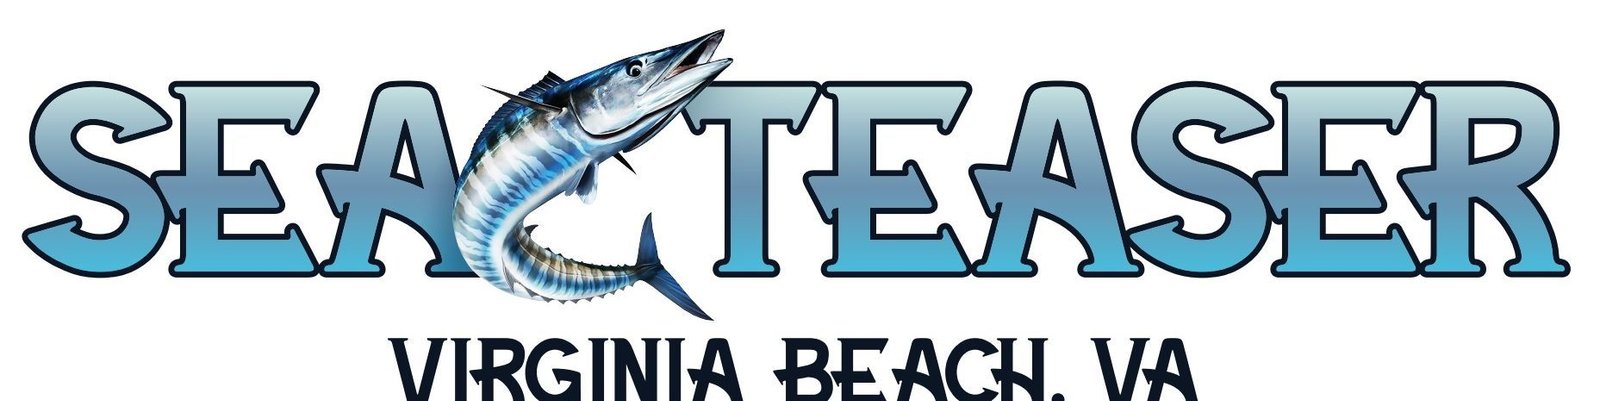 Sea Teaser logo 6